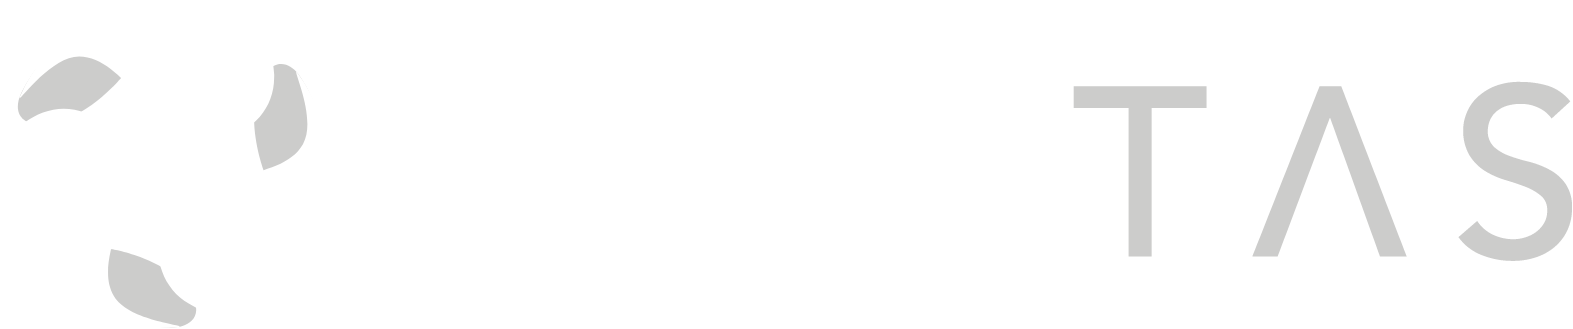 Civitas Resources Logo groß für dunkle Hintergründe (transparentes PNG)